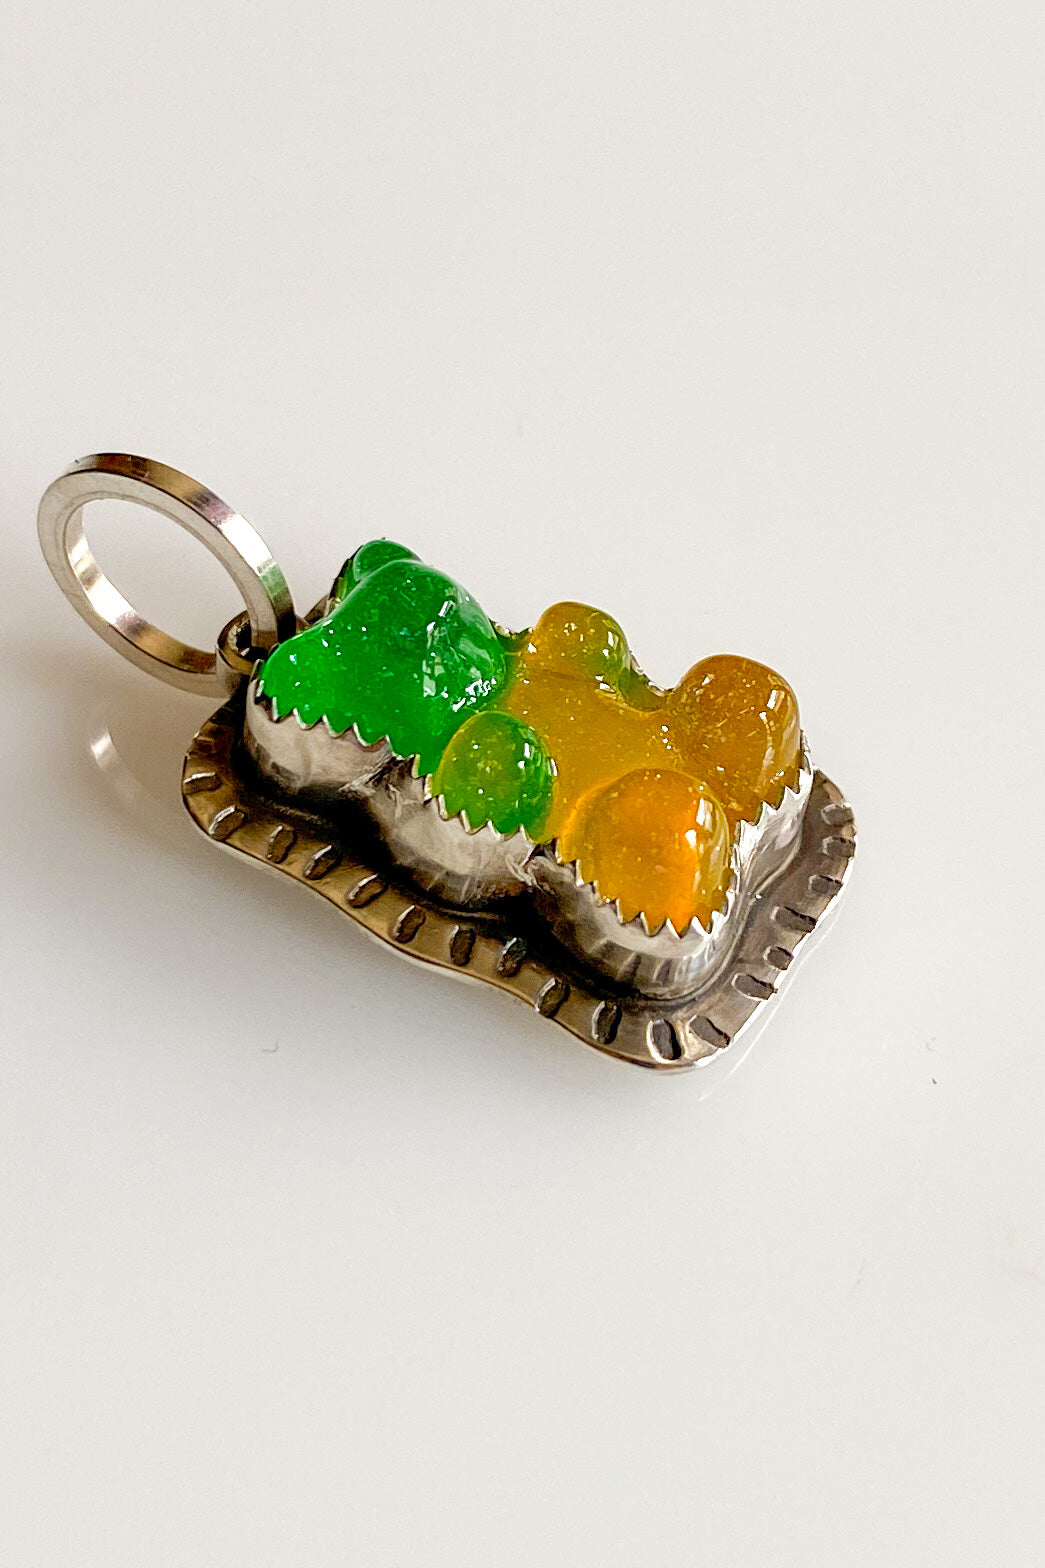 Green gummy bear charm